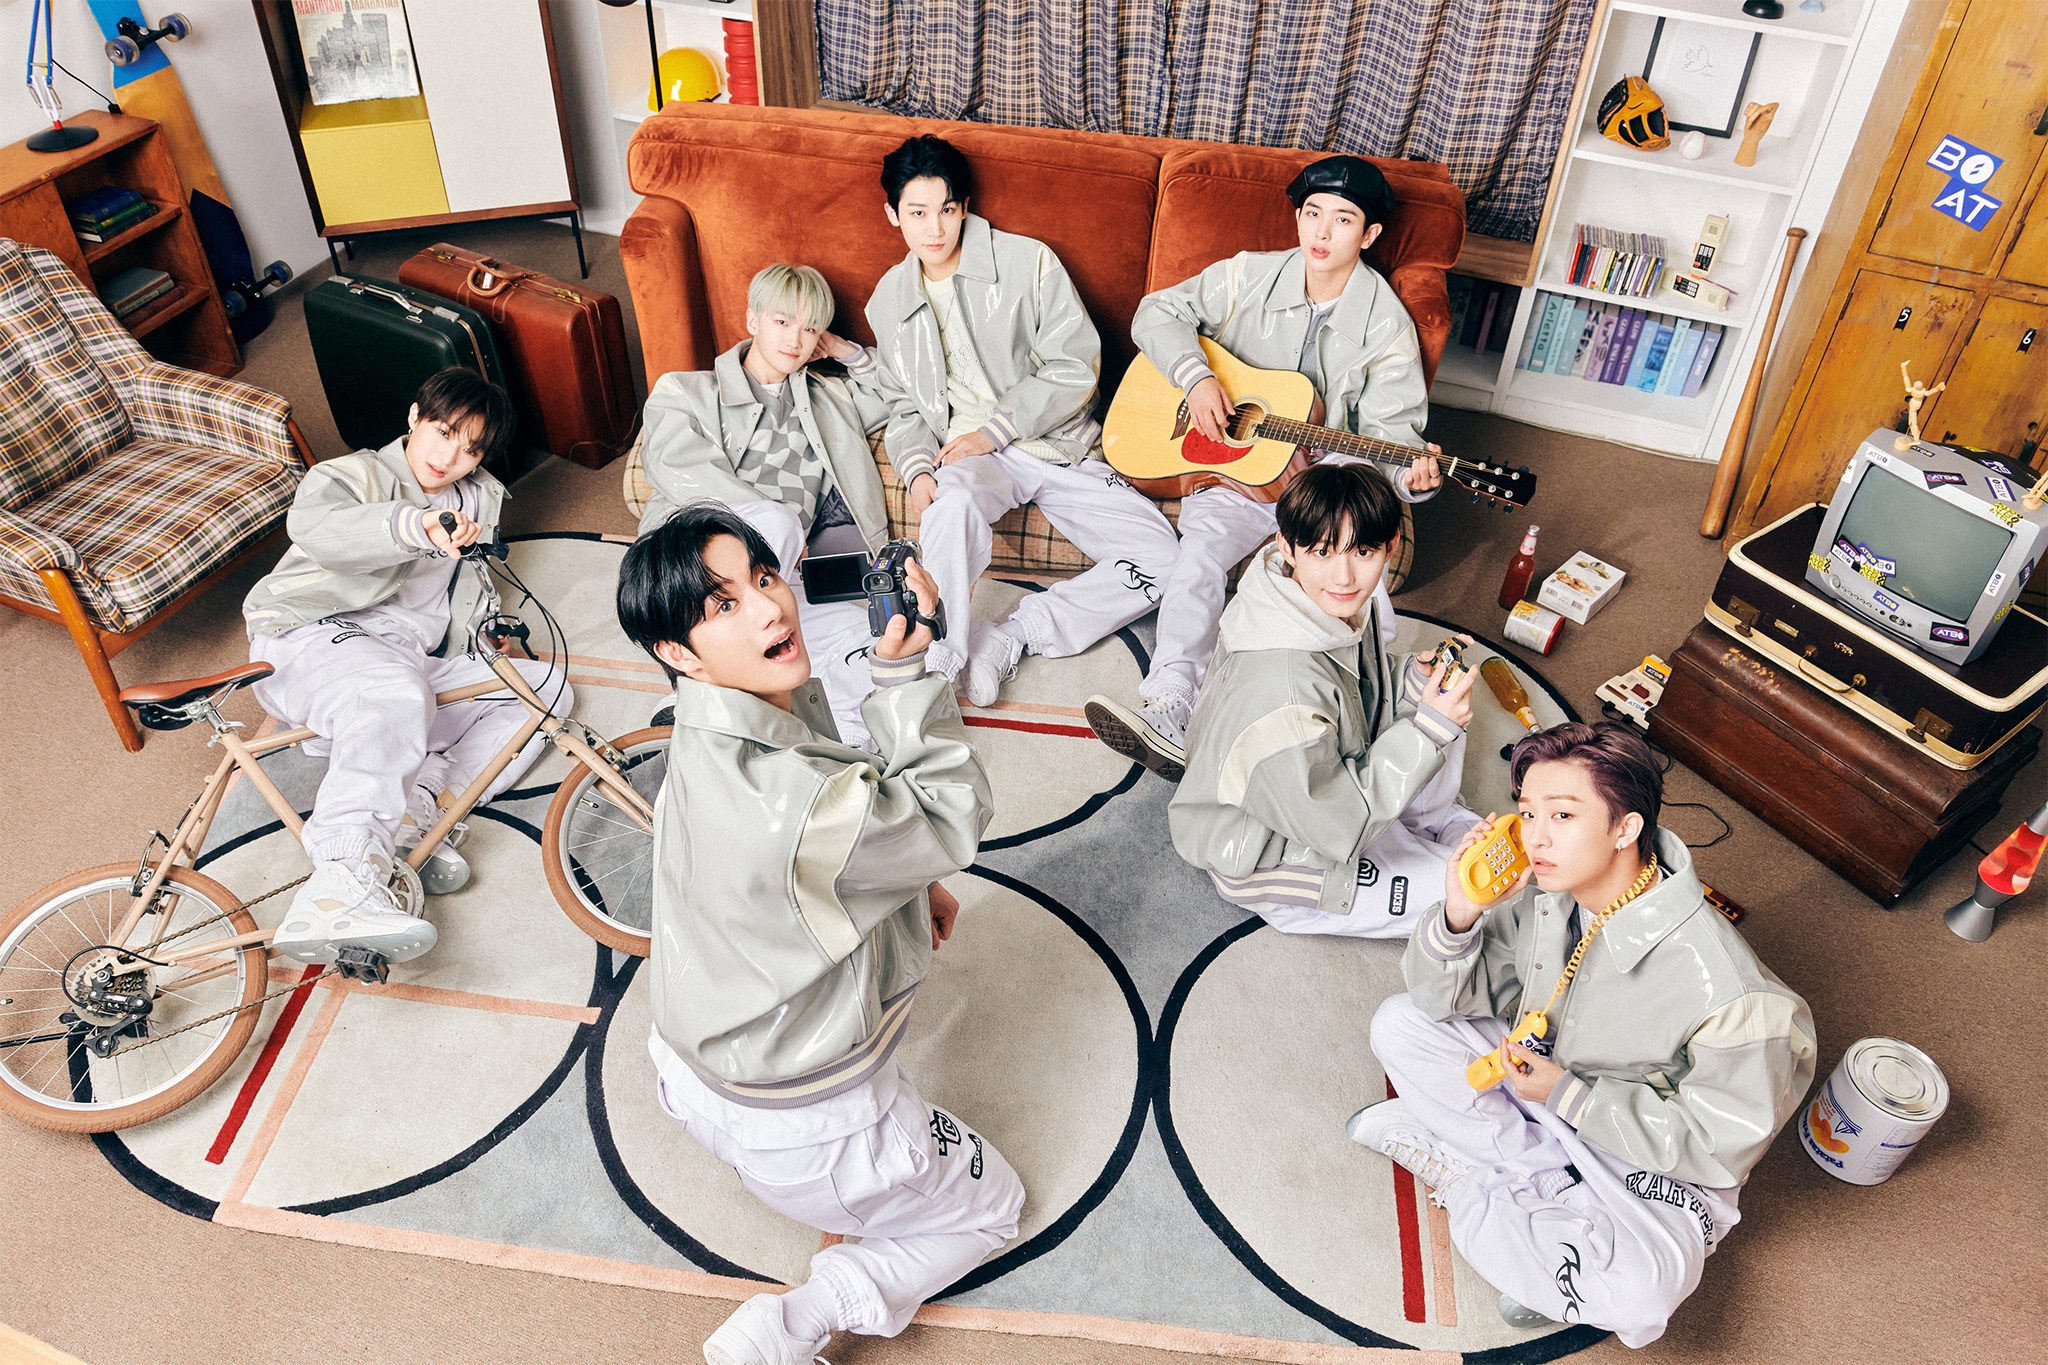 【MUSIC ON! TV（エムオン!）】
韓国初のバランスサバイバルオーディション番組から
誕生した、7人組ボーイズグループATBO
彼らの初来日に密着した
撮り下ろしのオリジナル番組を
11月にエムオン!で放送！
プレゼントキャンペーンも実施中！